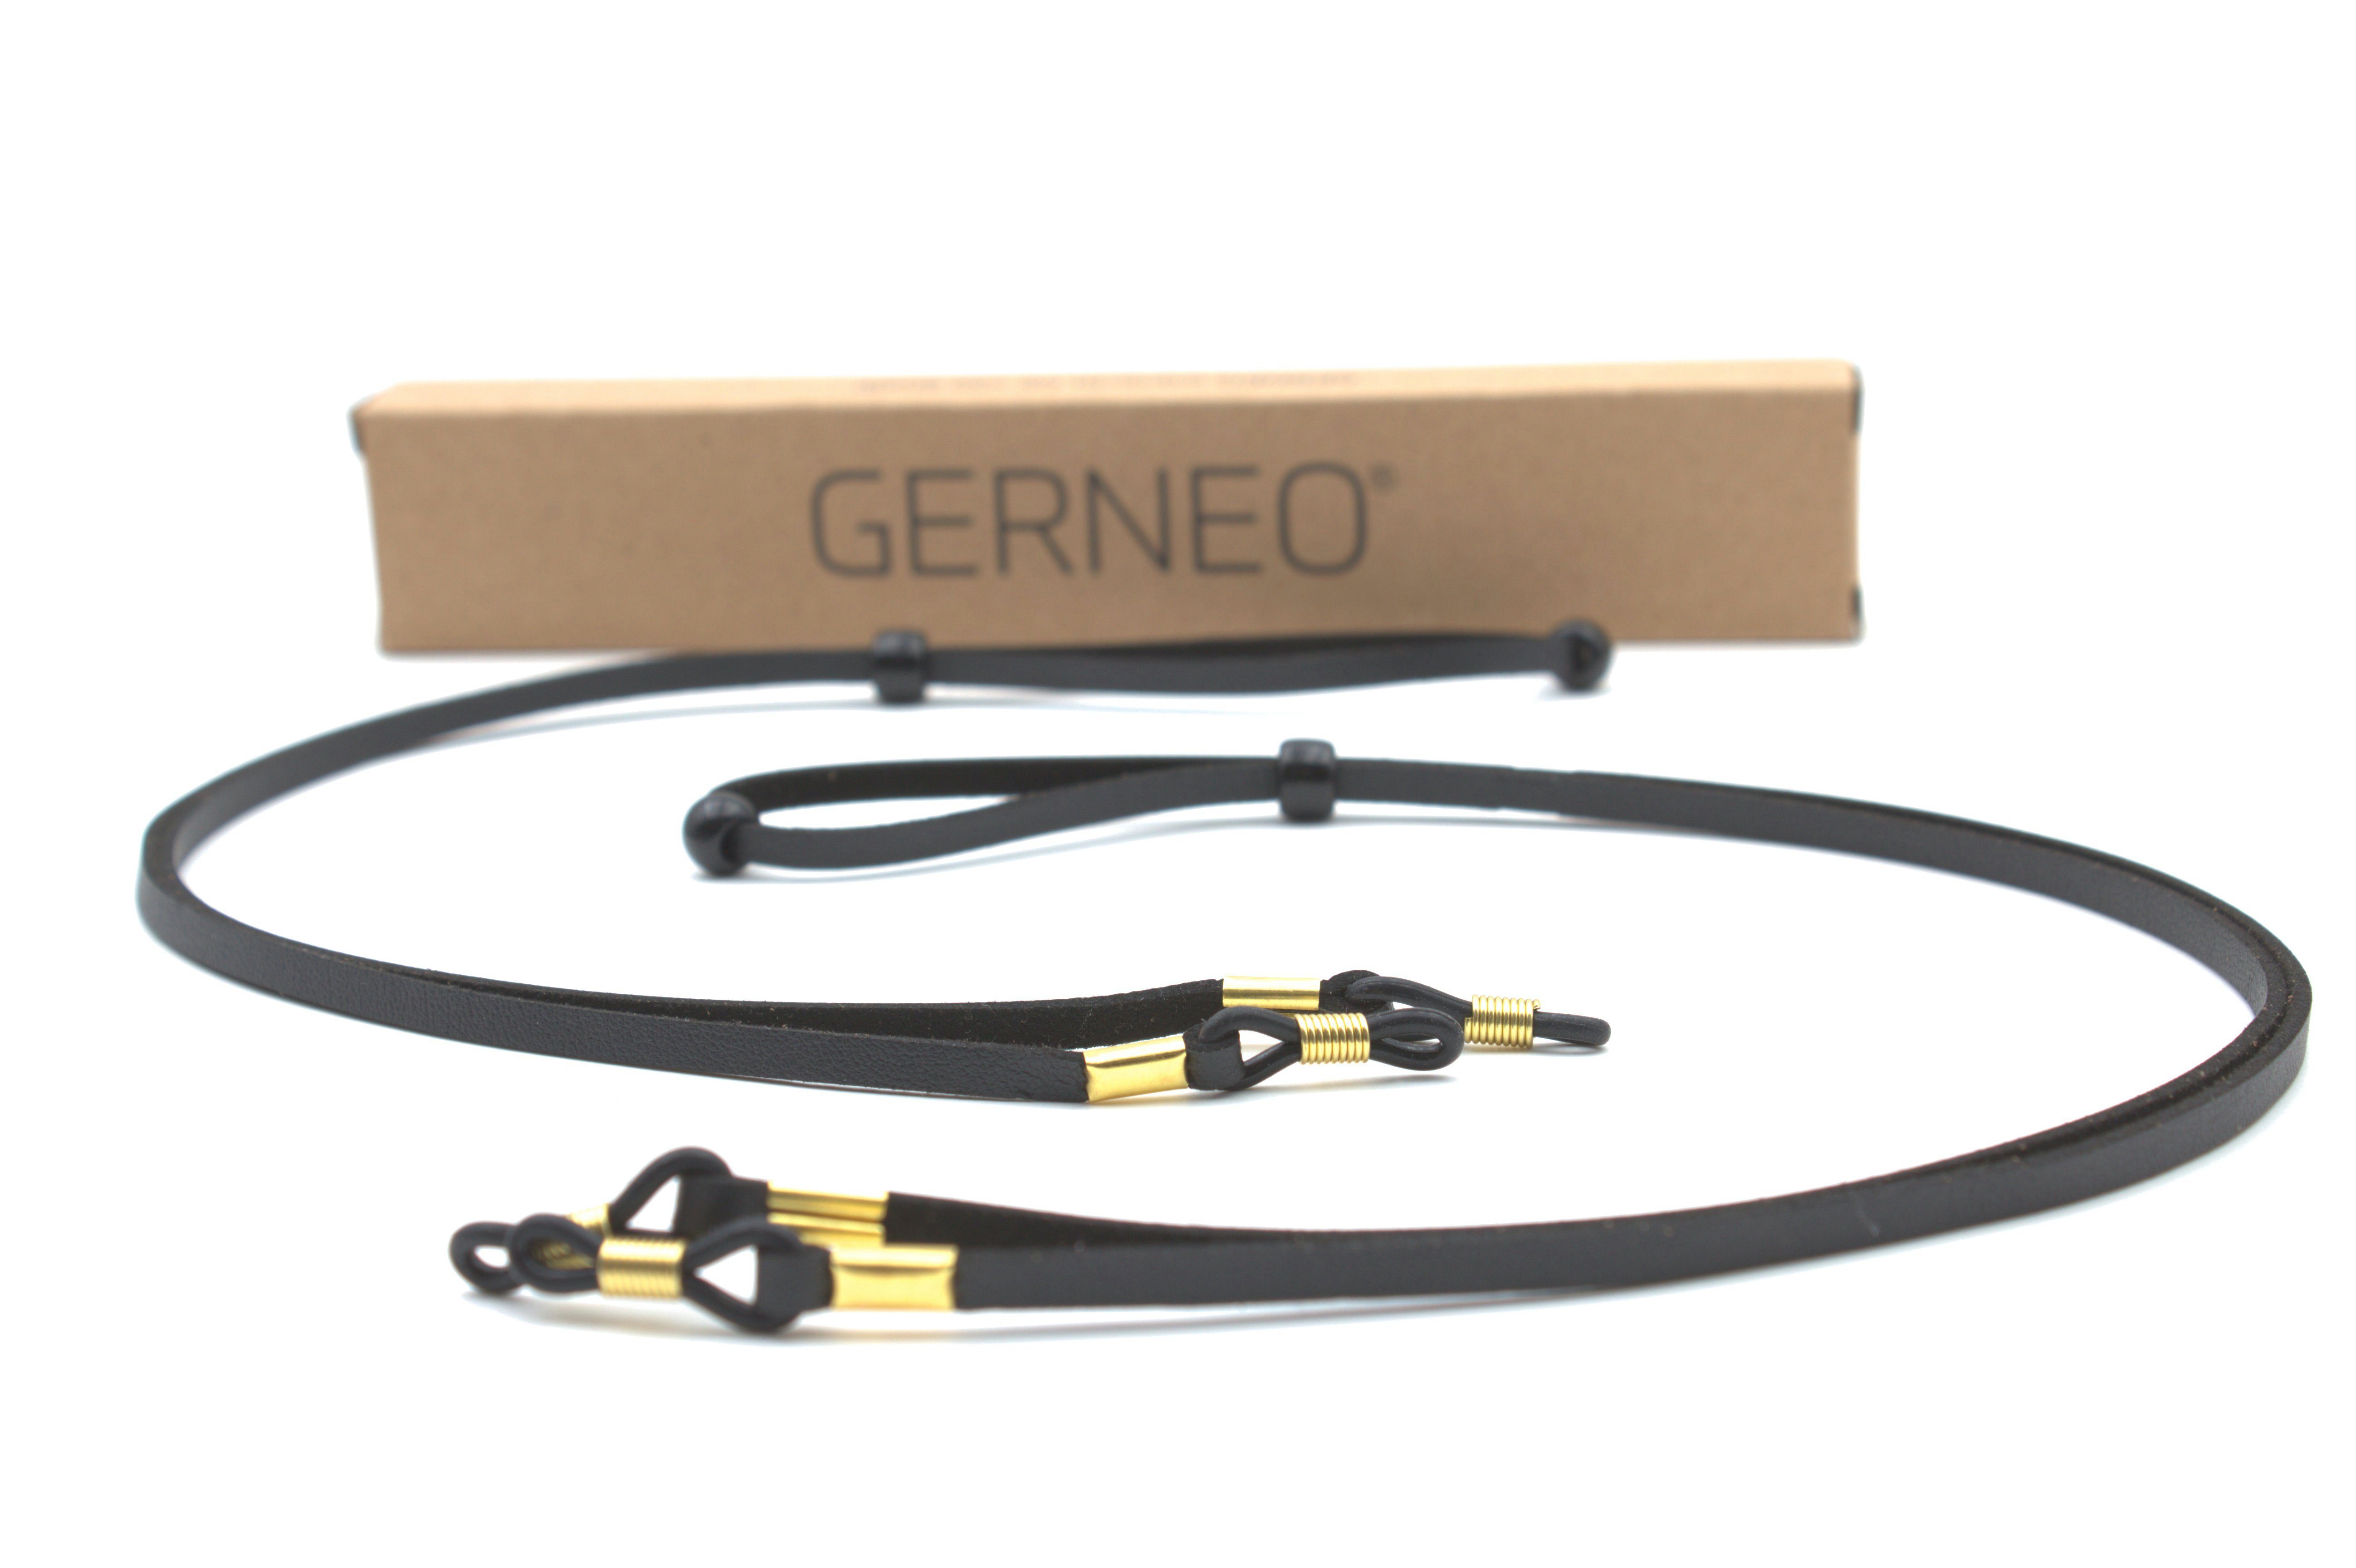 GERNEO Brillenband GERNEO® - Bilbao – hochwertiges Brillenband Leder- & Wildlederoptik, PU Brillenkordel – Band schwarz & hellbraun – Halterungen gold 2x-Schwarz